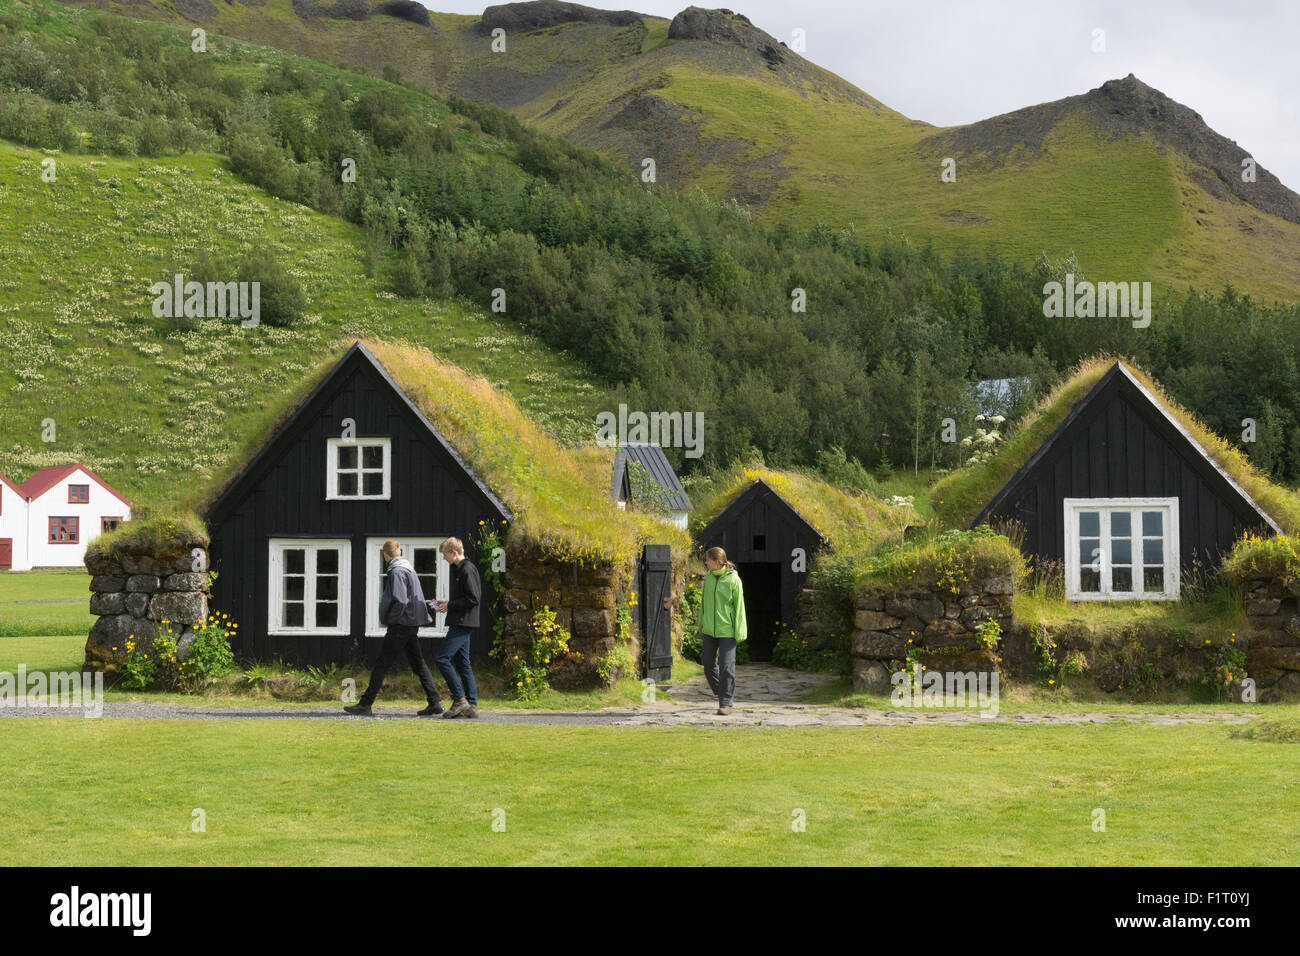 Touristen, die zwischen den traditionellen Rasenhäusern oder torfbæir auf Isländisch spazieren gehen, im Skógarsafn - Skogar Regional Museum in Island Stockfoto